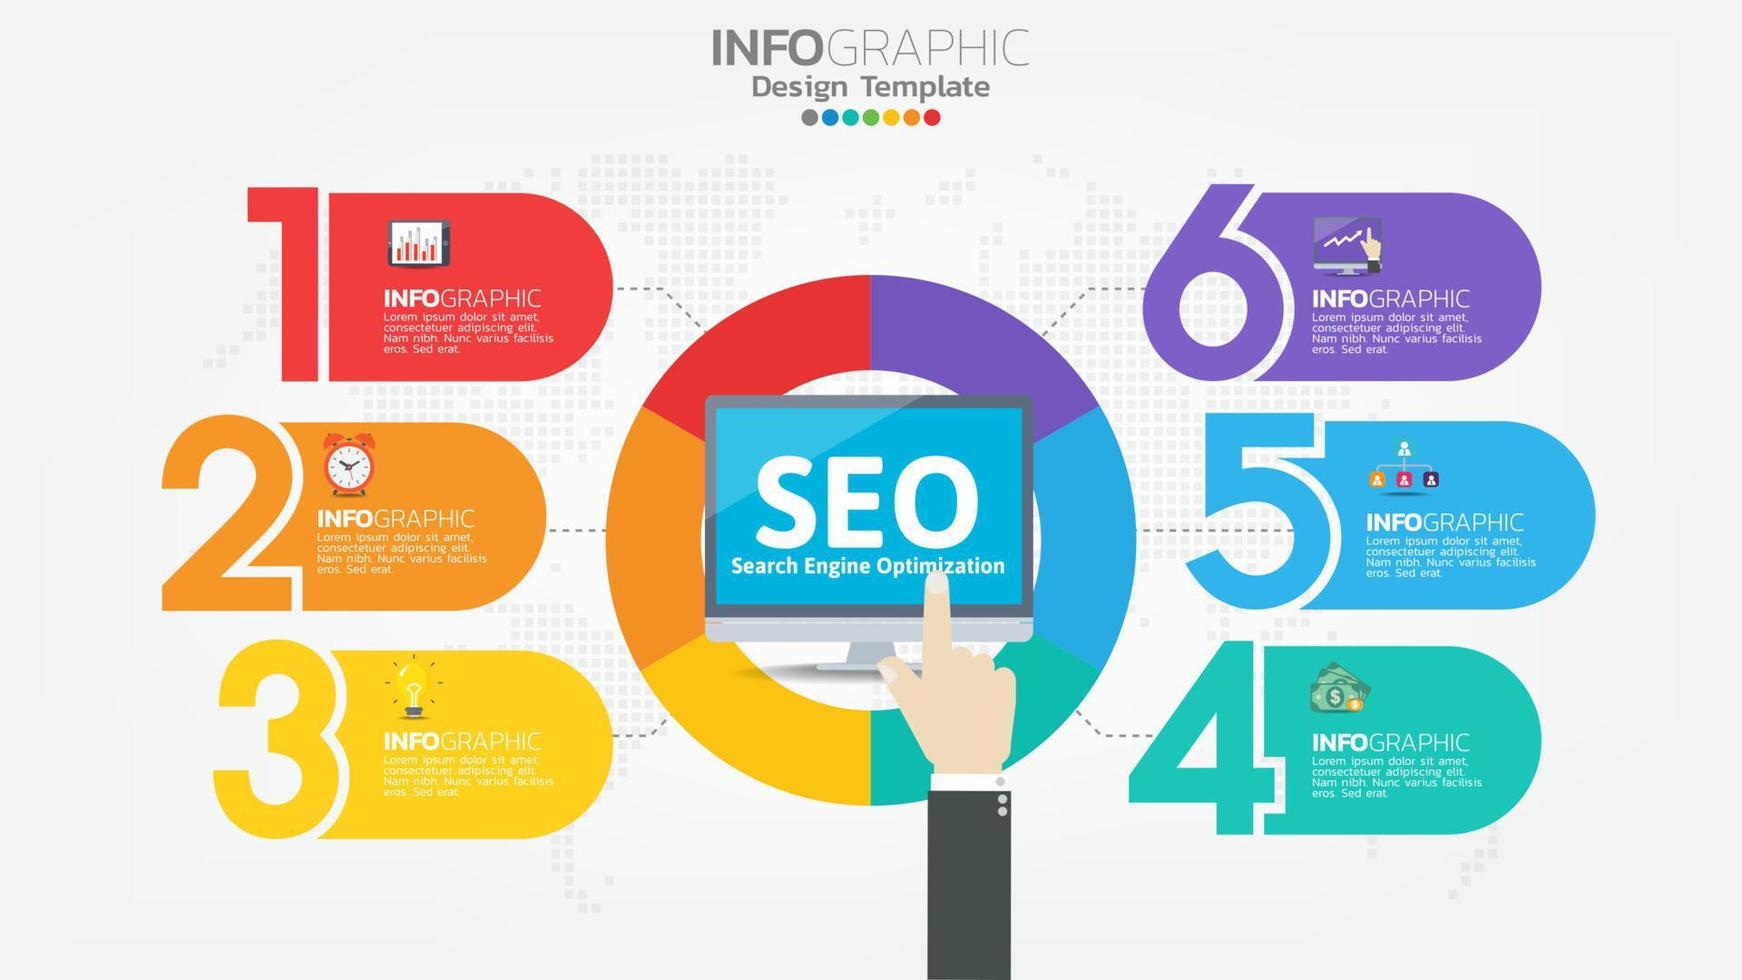 ícone da web seo search engine optimization banner para negócios e marketing vetor